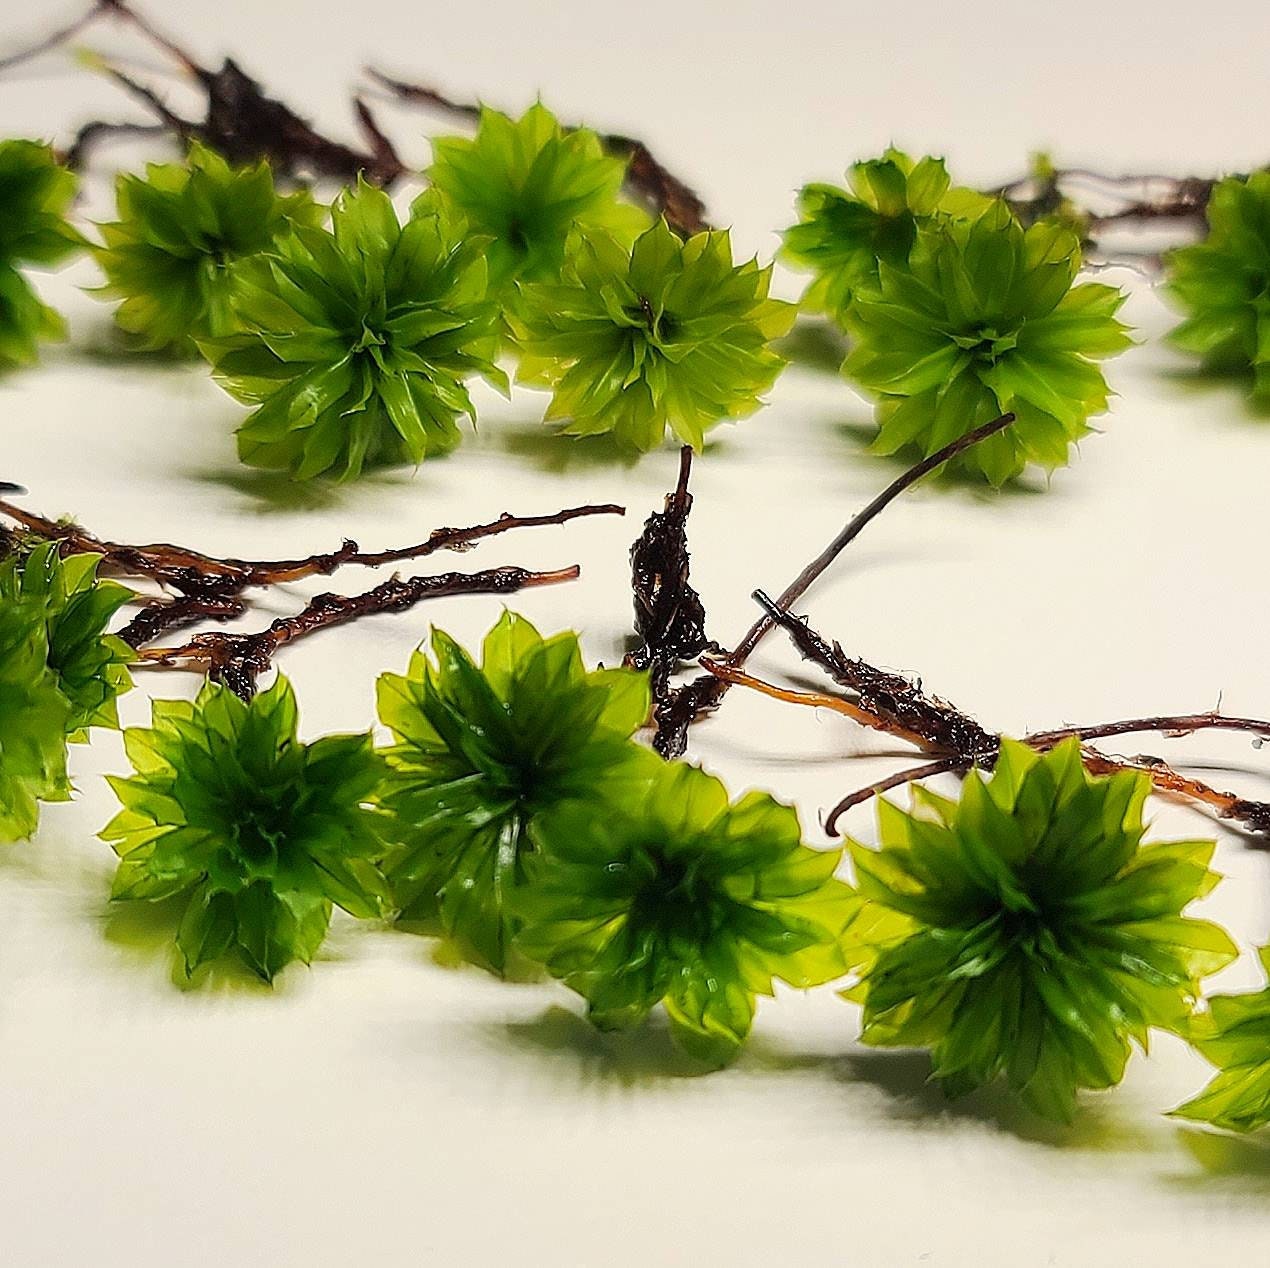 Tree Moss climacium Americanum / Dendroides Rare Live Moss for Terrarium, Terrarium  Moss, Live Moss for DIY Terrarium 